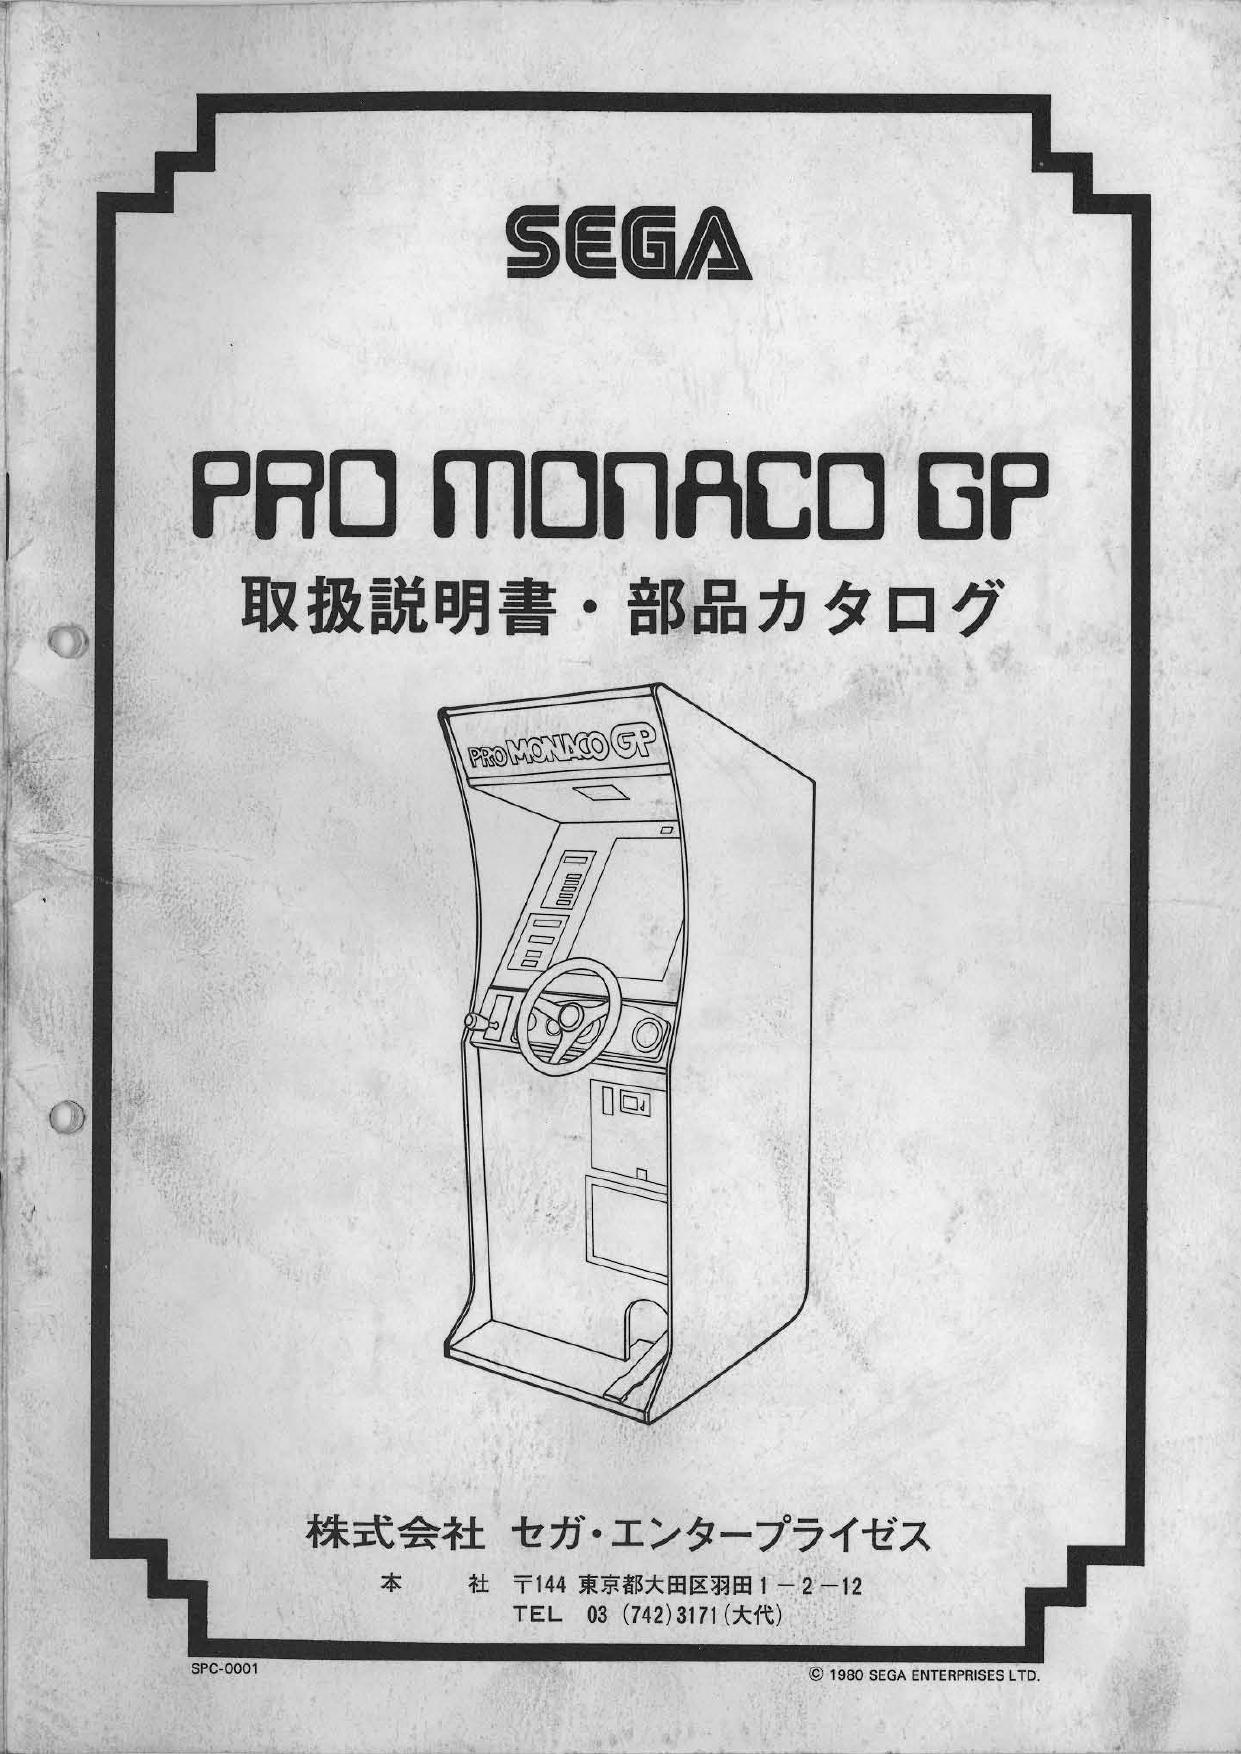 Pro Monaco GP (Japanese)